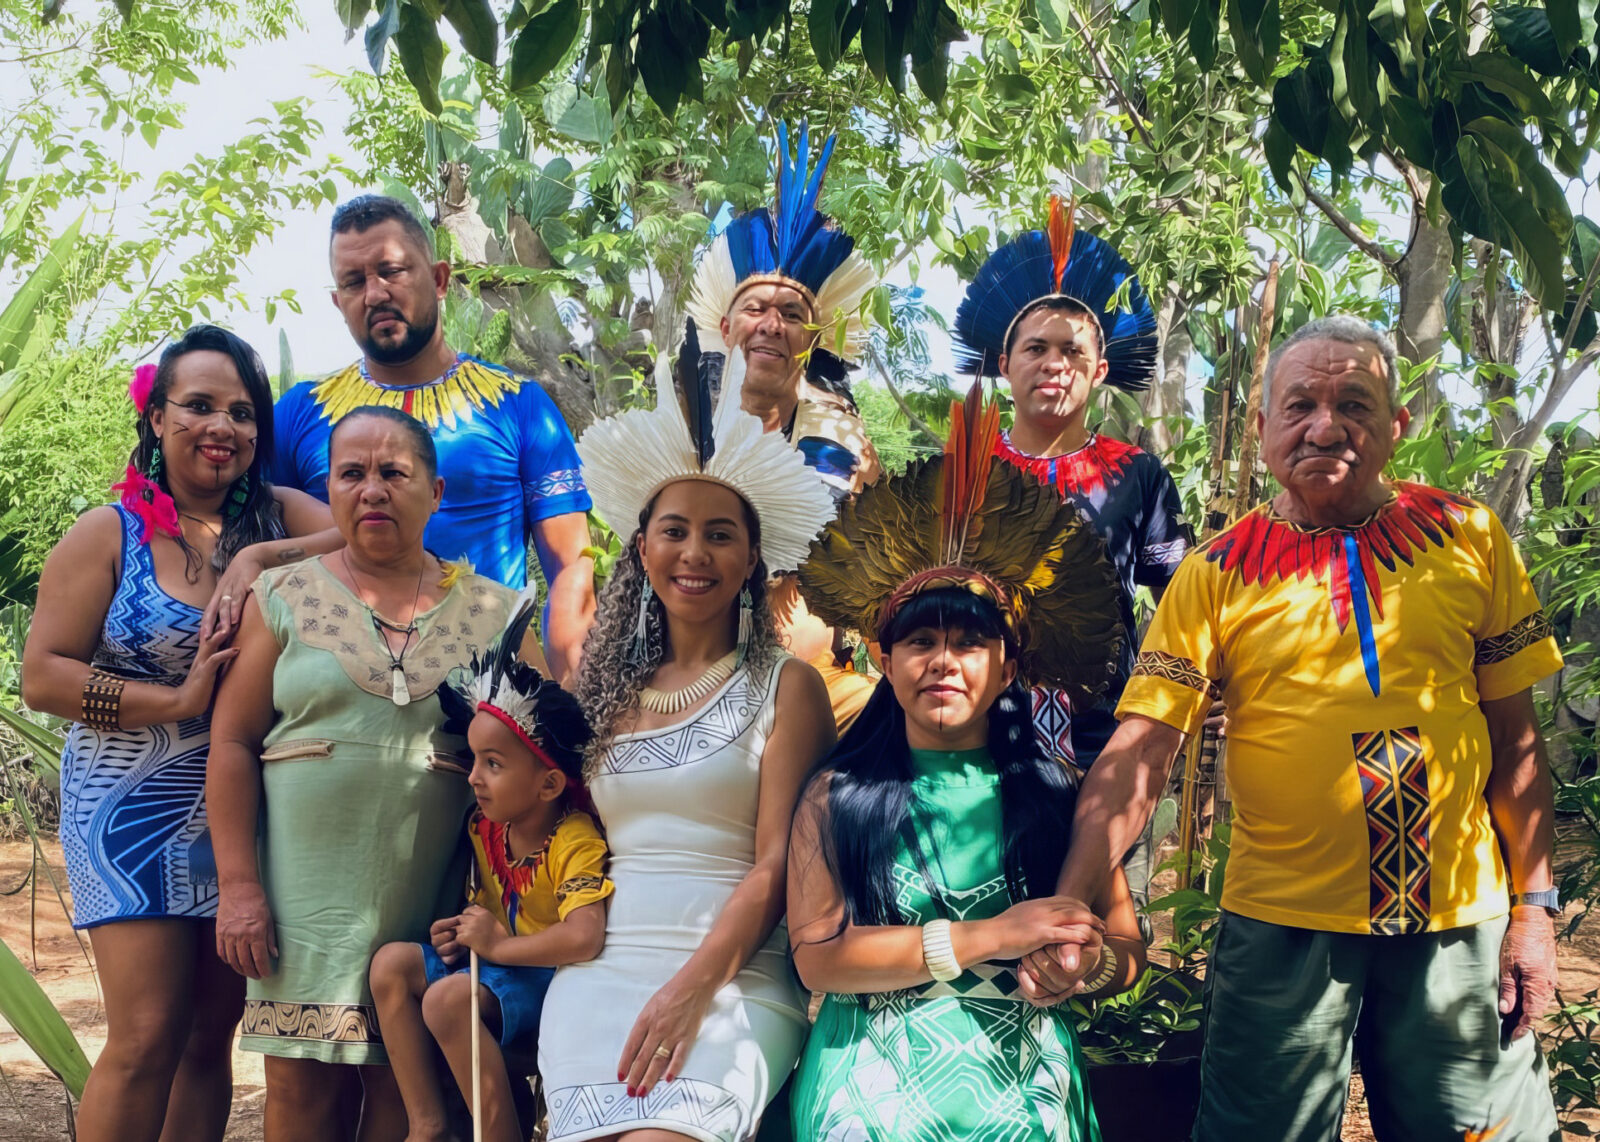 pais quilombolas e indigenas defendem legado de respeito a natureza